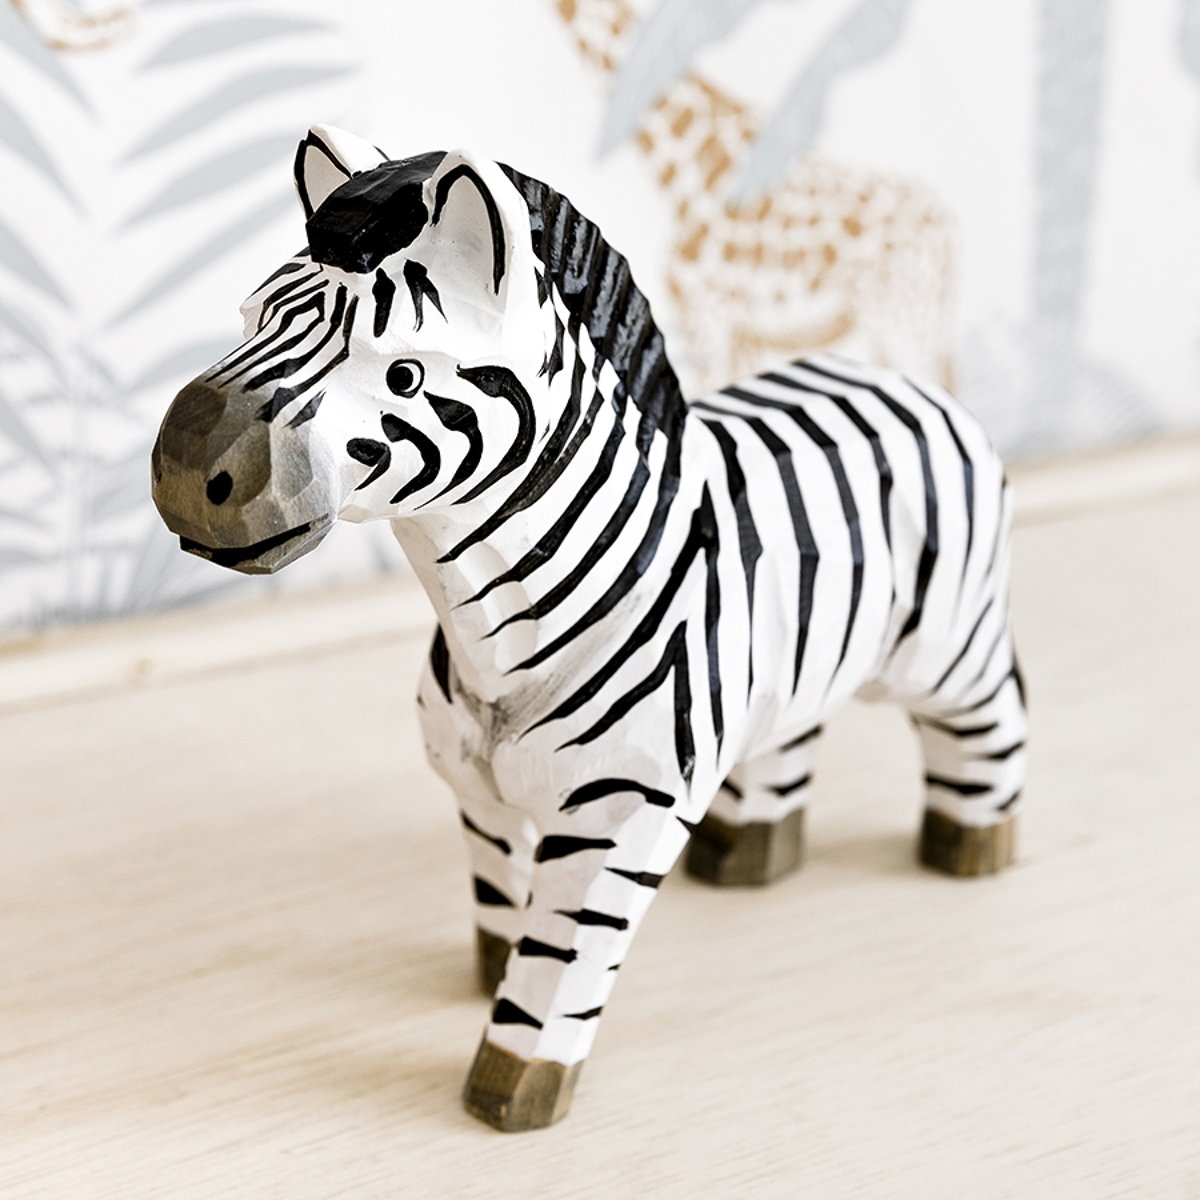 Zebra juguete